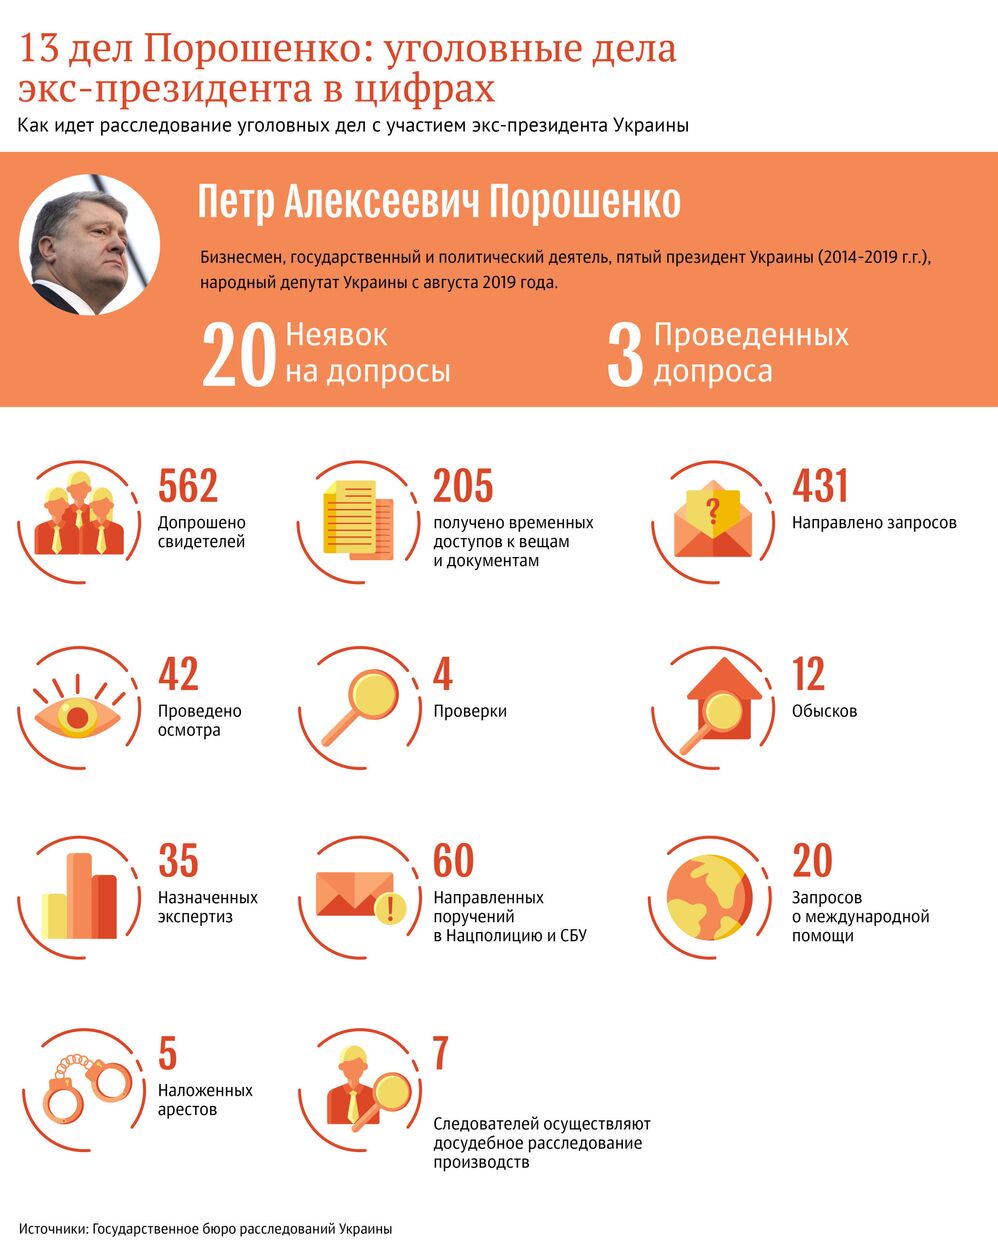 13 дел Порошенко: на Украине рассказали, в чем обвиняют экс-президента